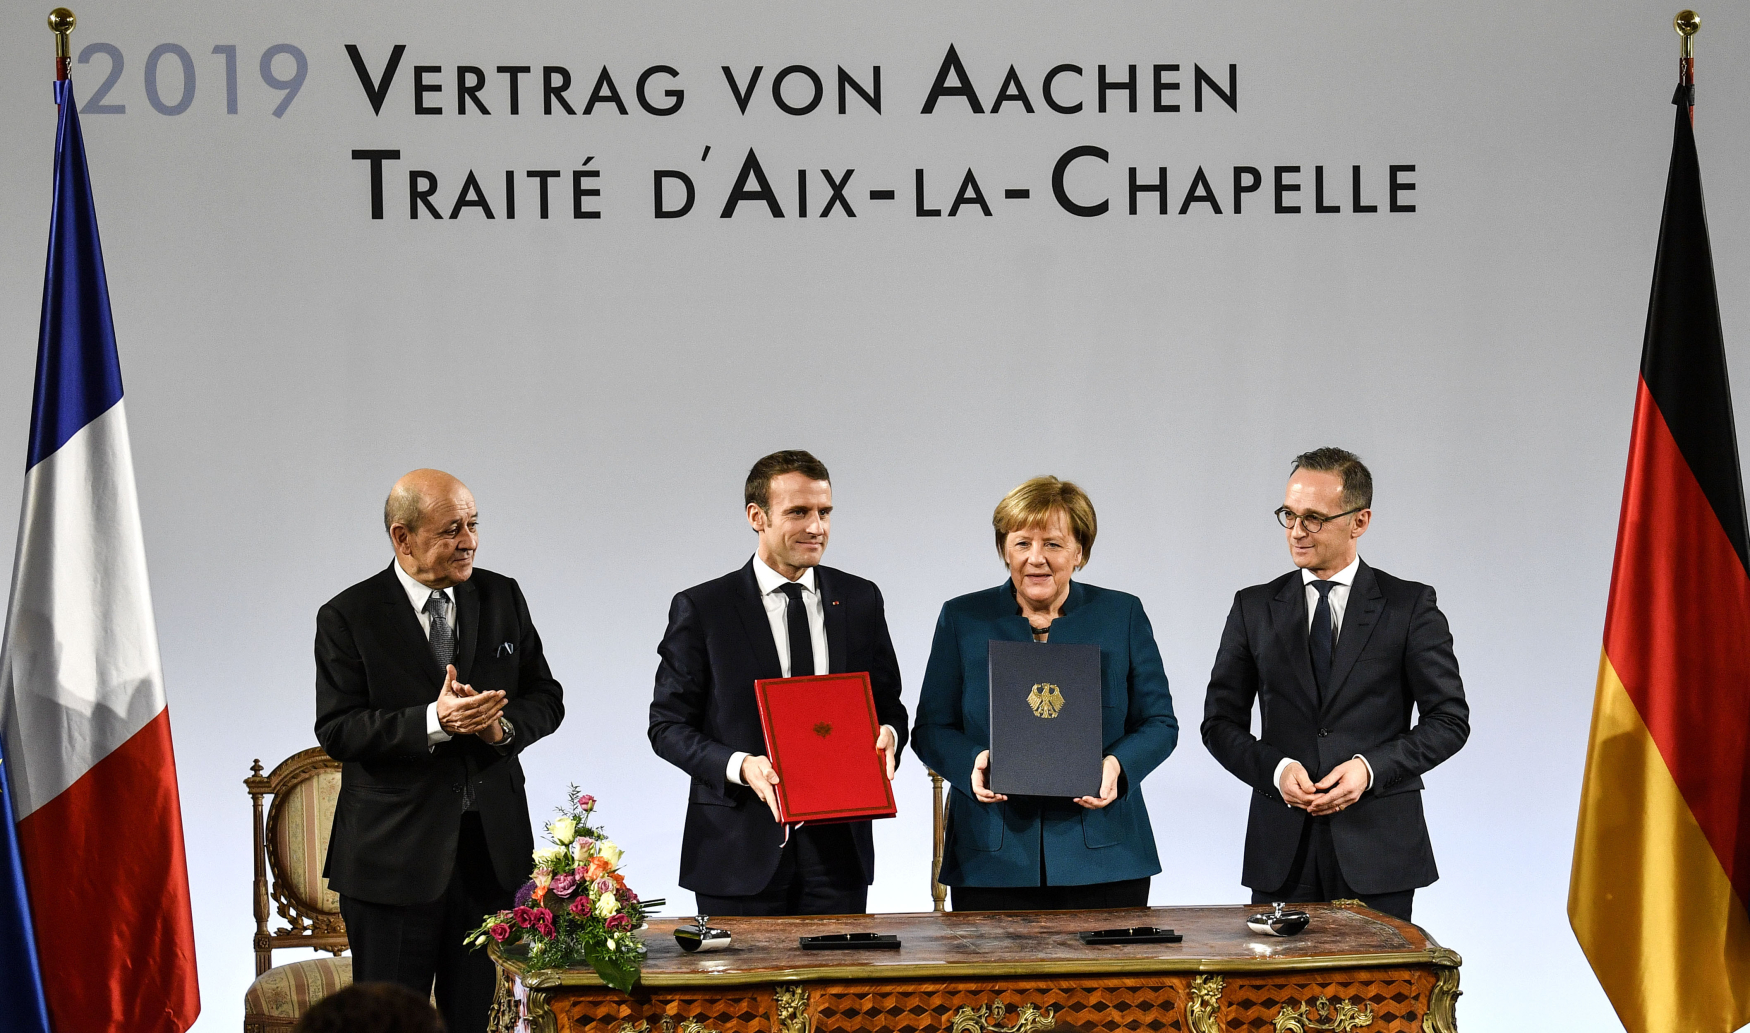 Smlouvu o spolupráci podepsali Angela Merkelová a Emmanuel Macron v Cáchách